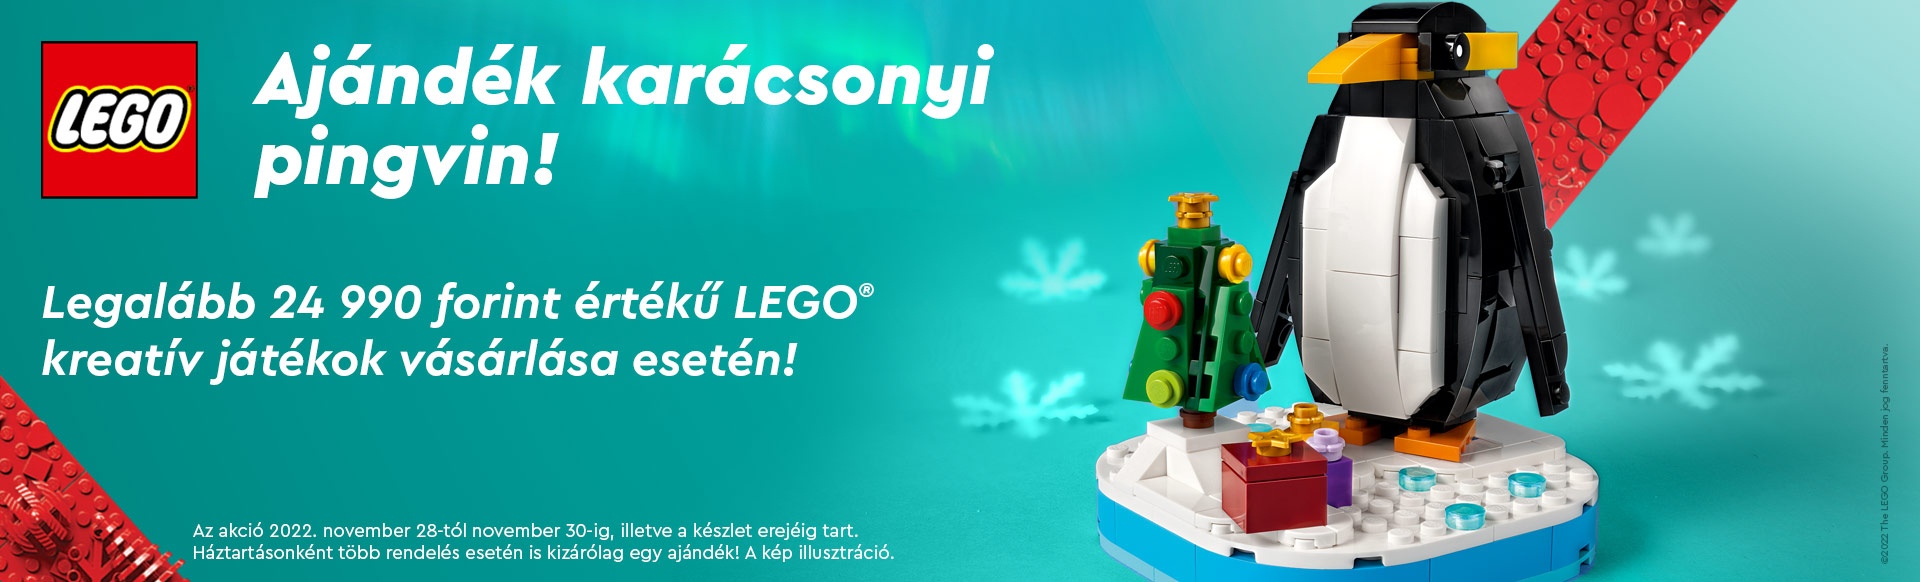 AJÁNDÉK KARÁCSONYI PINGVIN! Legalább 24990 forint értékű LEGO® kreatív játékok vásárlása esetén!